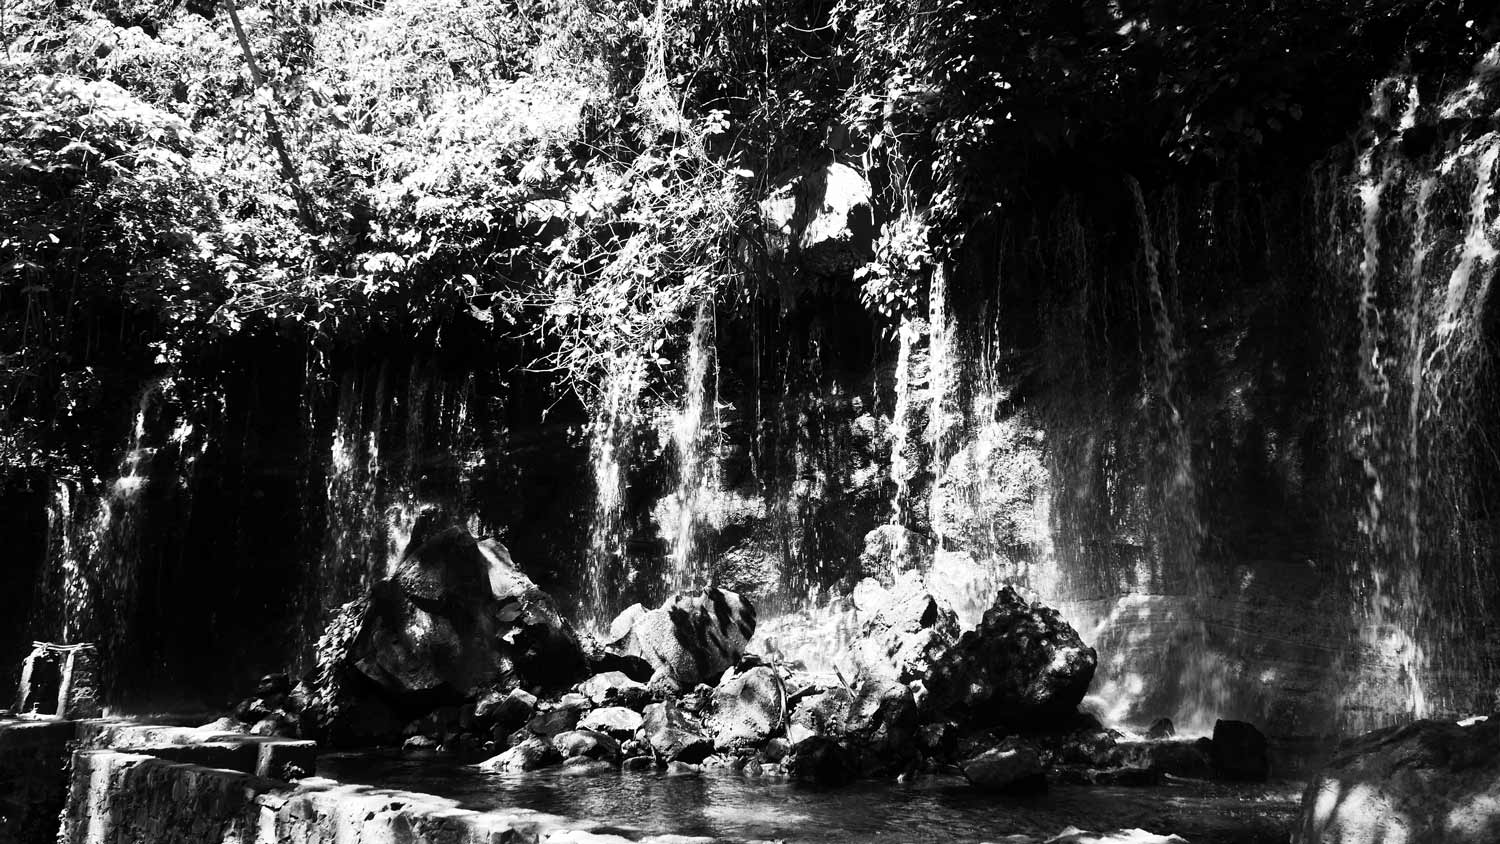 One of the Los Chorros waterfalls near Juayua, El Salvador